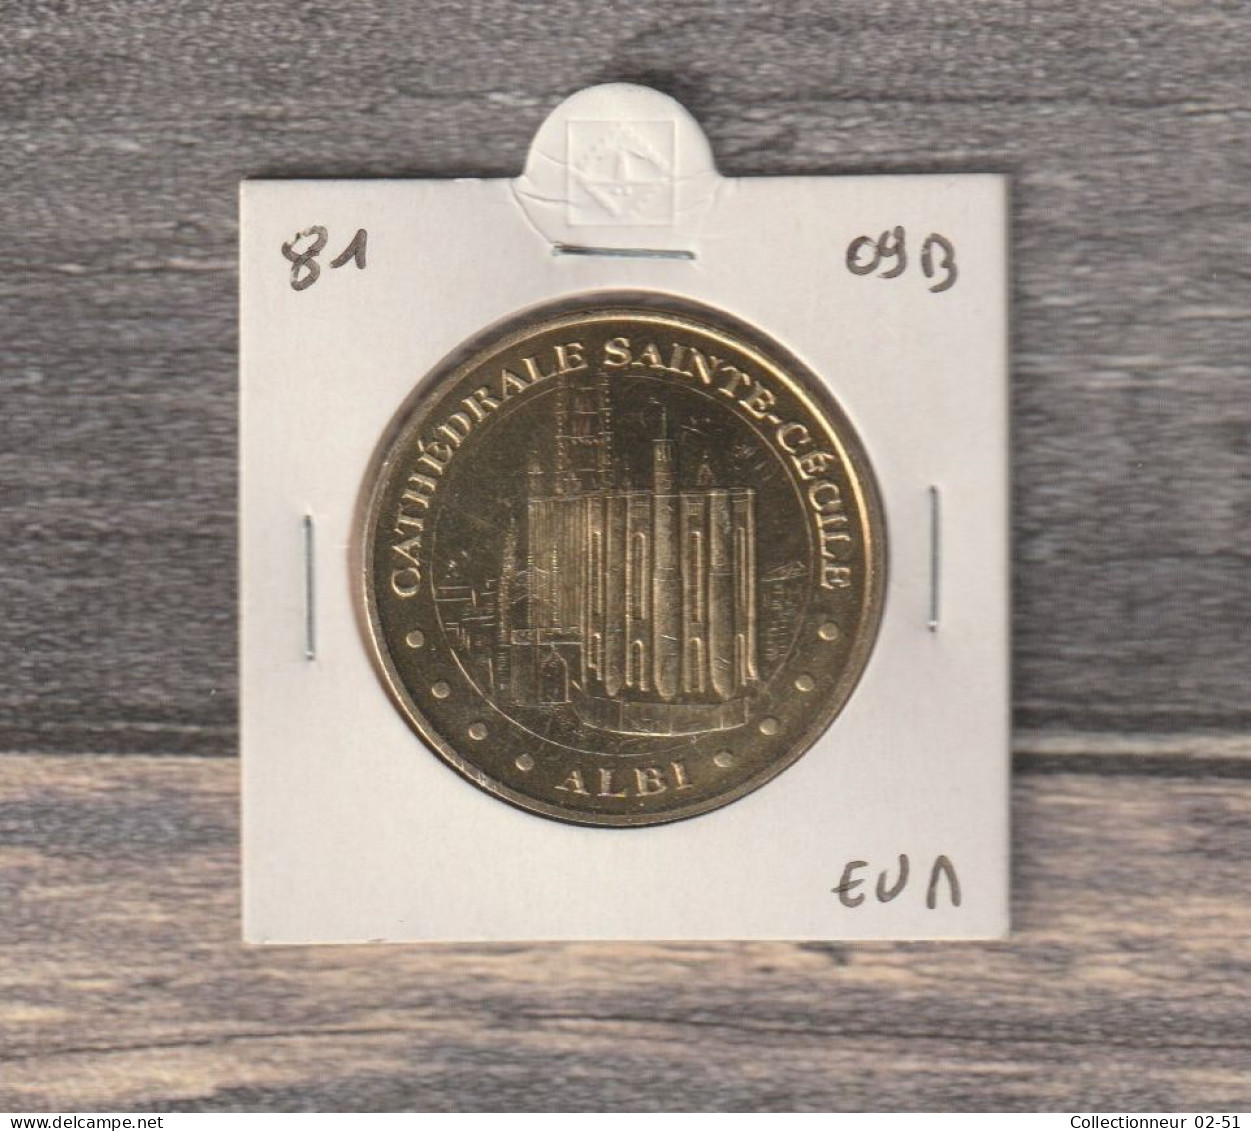 Monnaie De Paris : Cathédrale Sainte-Cécile (Albi) - 2009 - 2009